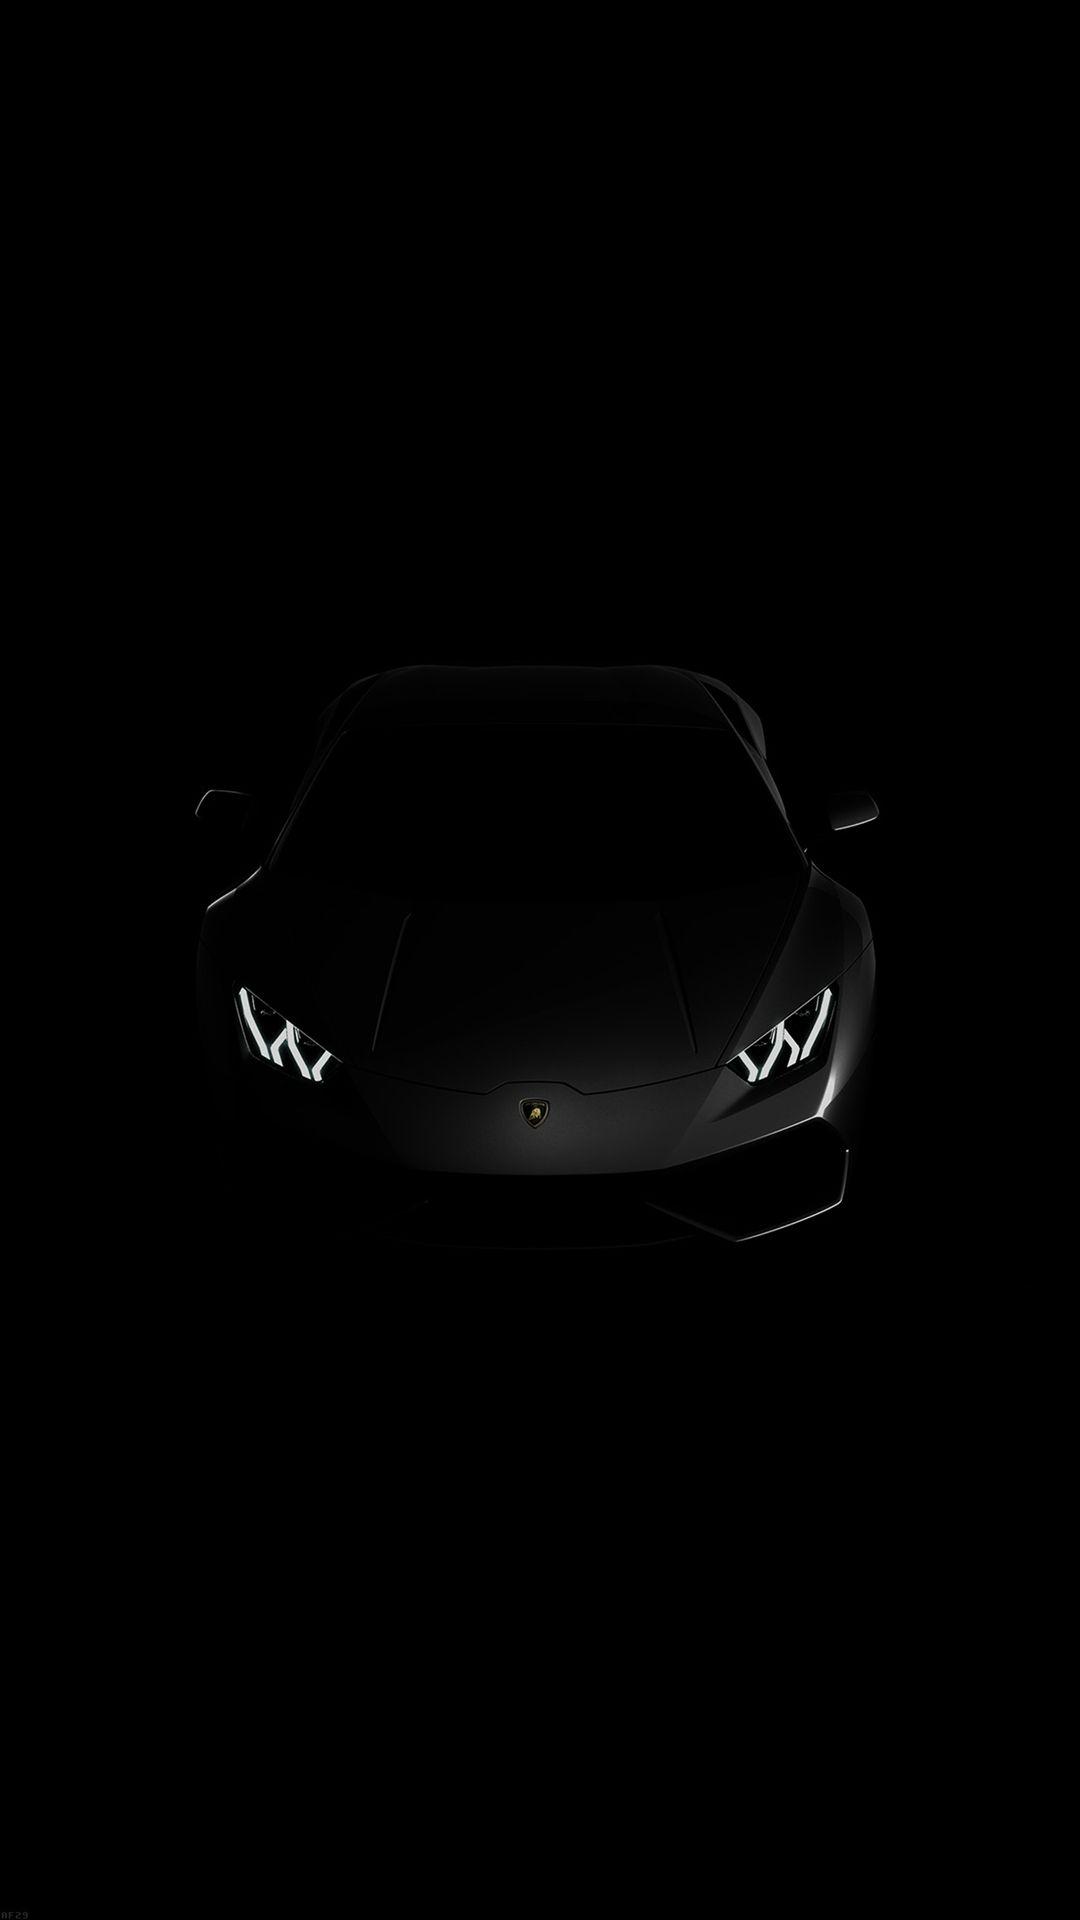 Lamborghini Huracan iPhone Wallpaper Free Lamborghini